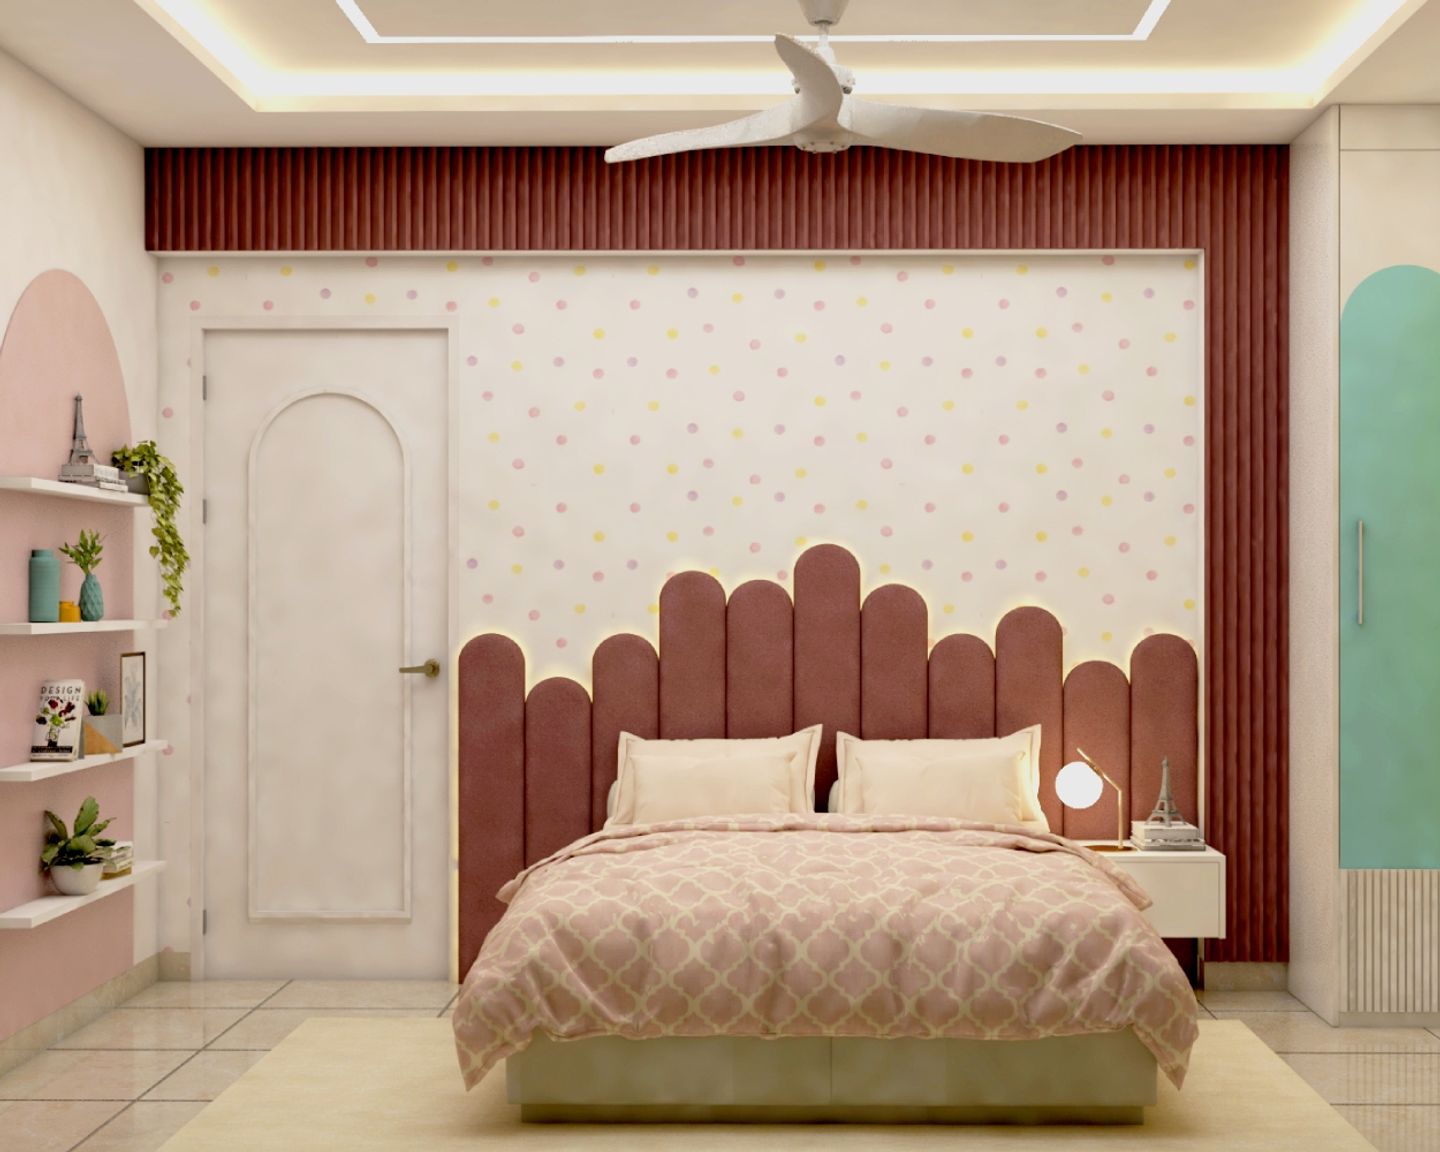 Multicoloured Polka Dot Bedroom Wallpaper Design - Livspace